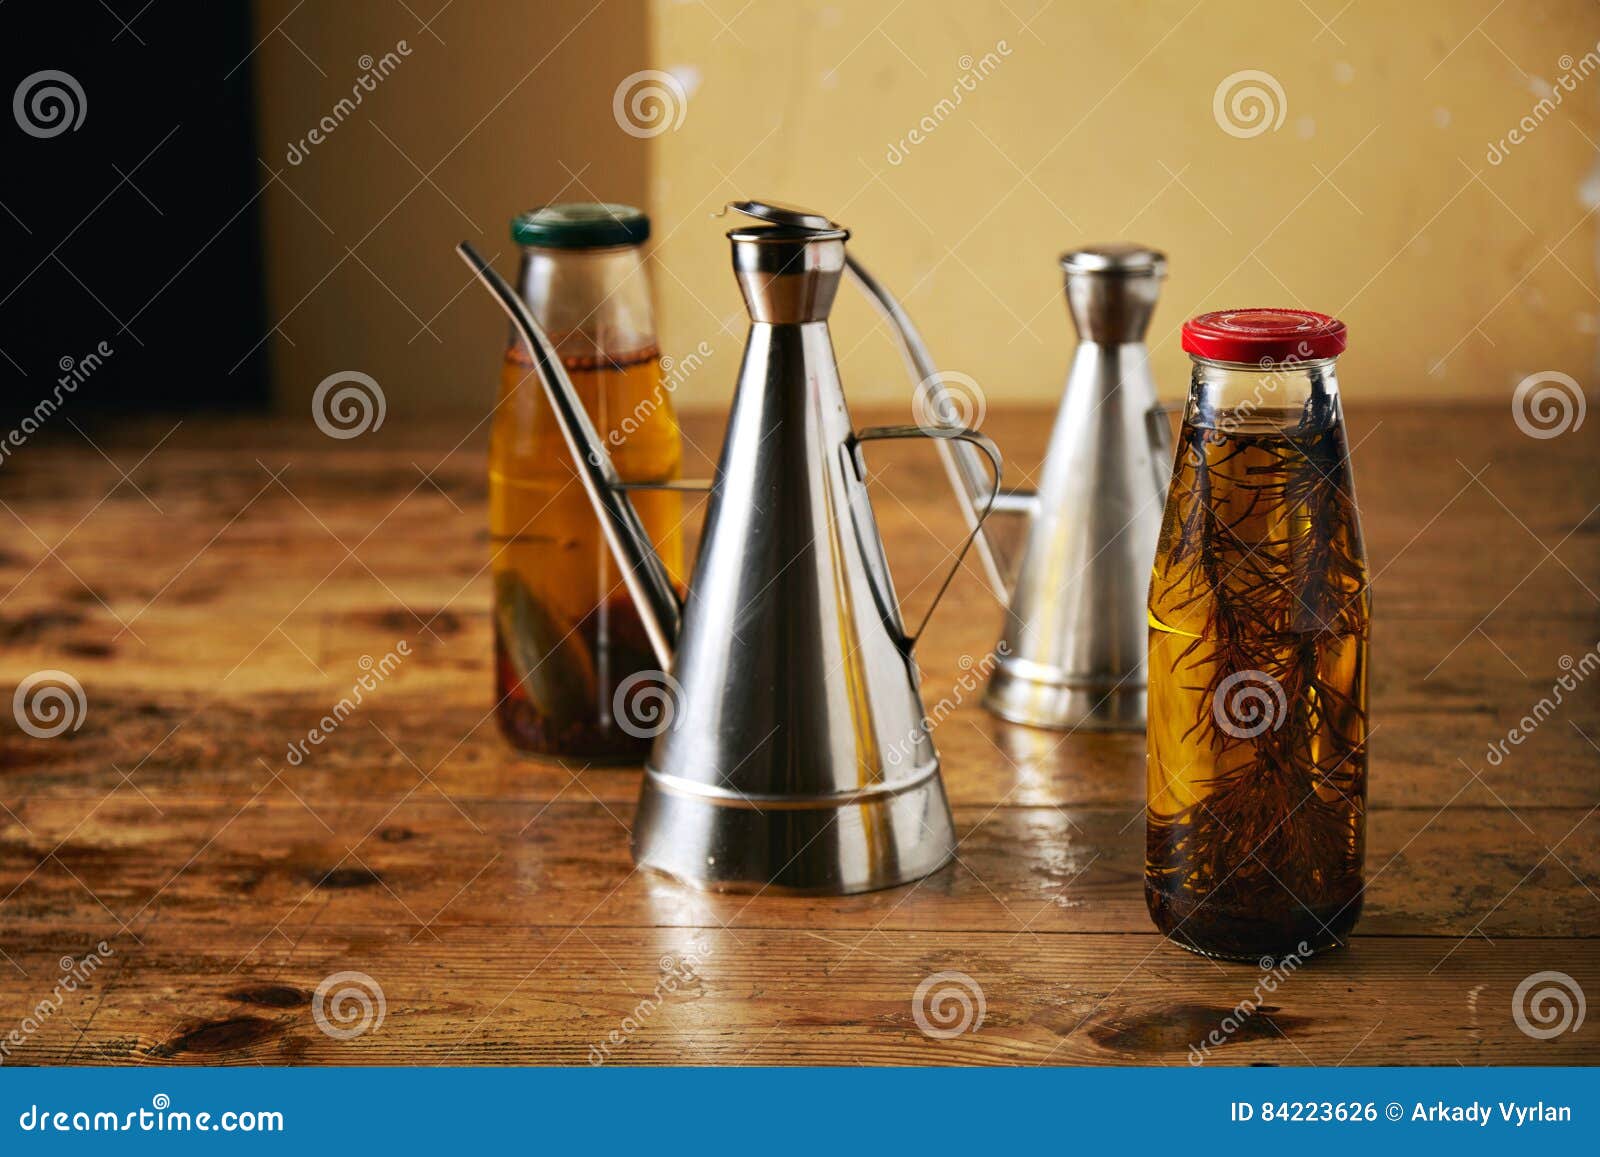 Aceite de oliva con las hierbas y los dispensadores de acero. Dos botellas con el hogar del artesano hicieron el aceite de oliva picante con romero y las pimientas y dos vinagreras brillantes del metal en una tabla marrón áspera